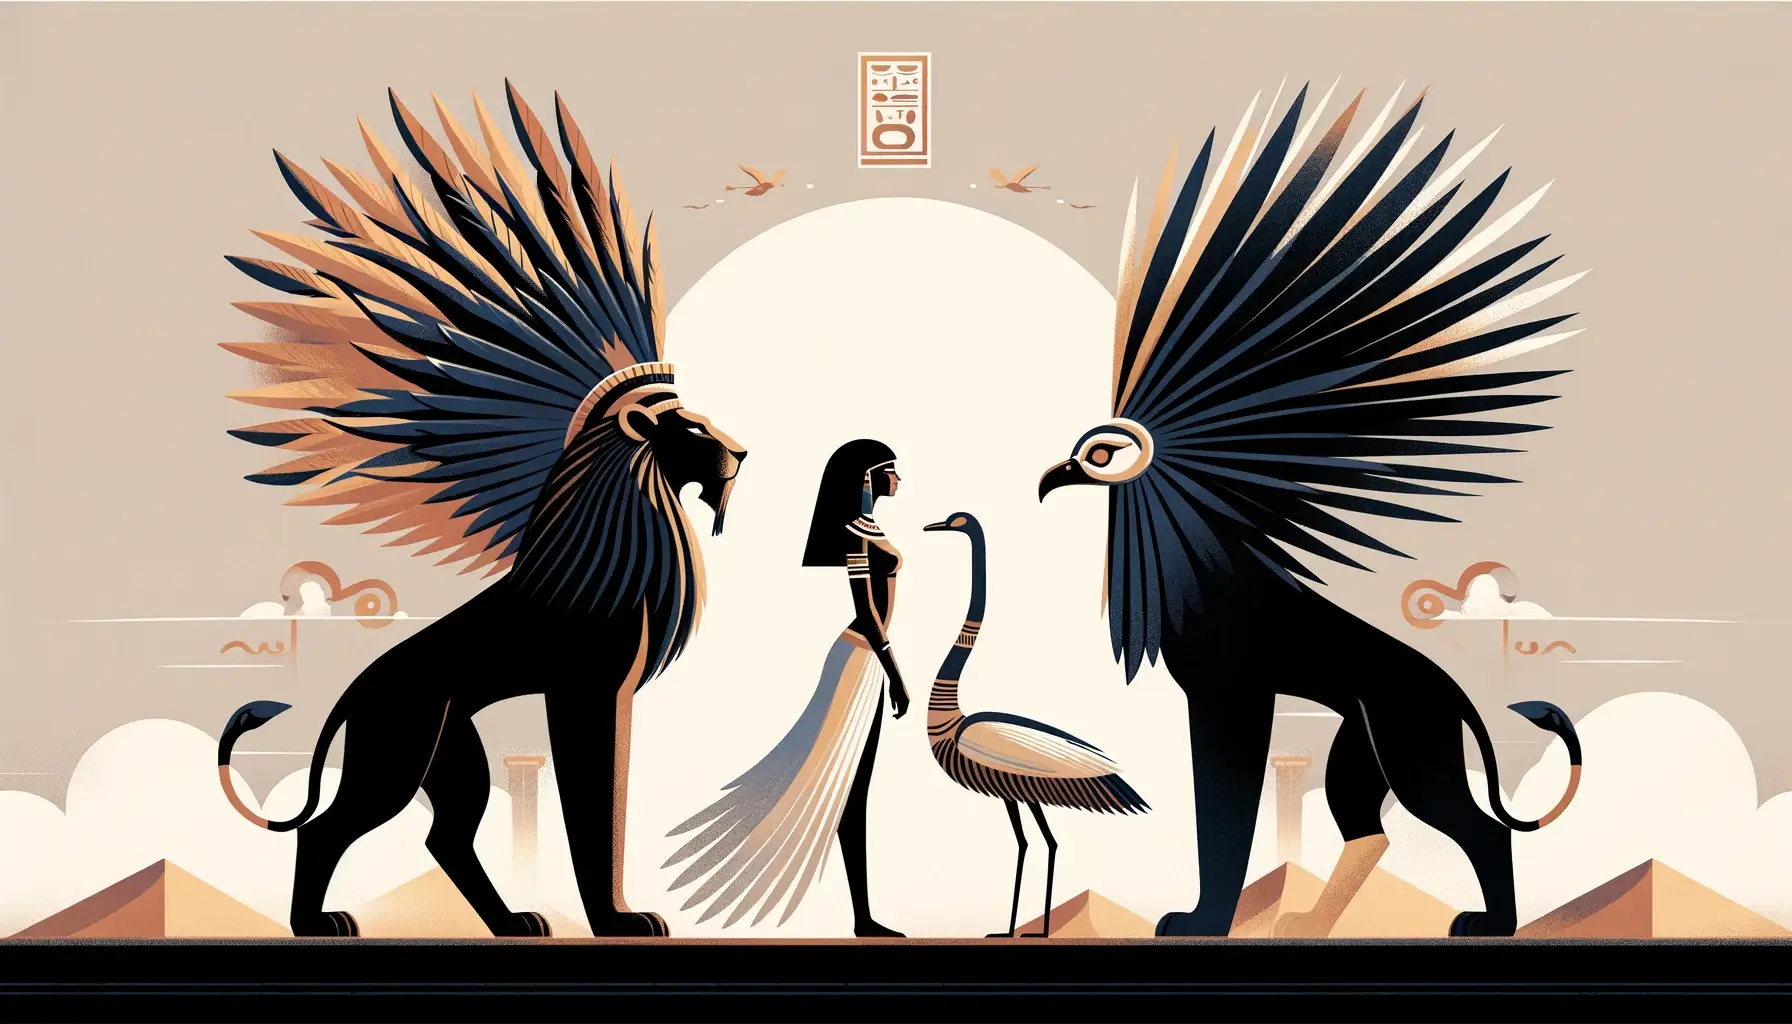 Sekhmet vs Shu: The Lioness Goddess of War vs The God of Air